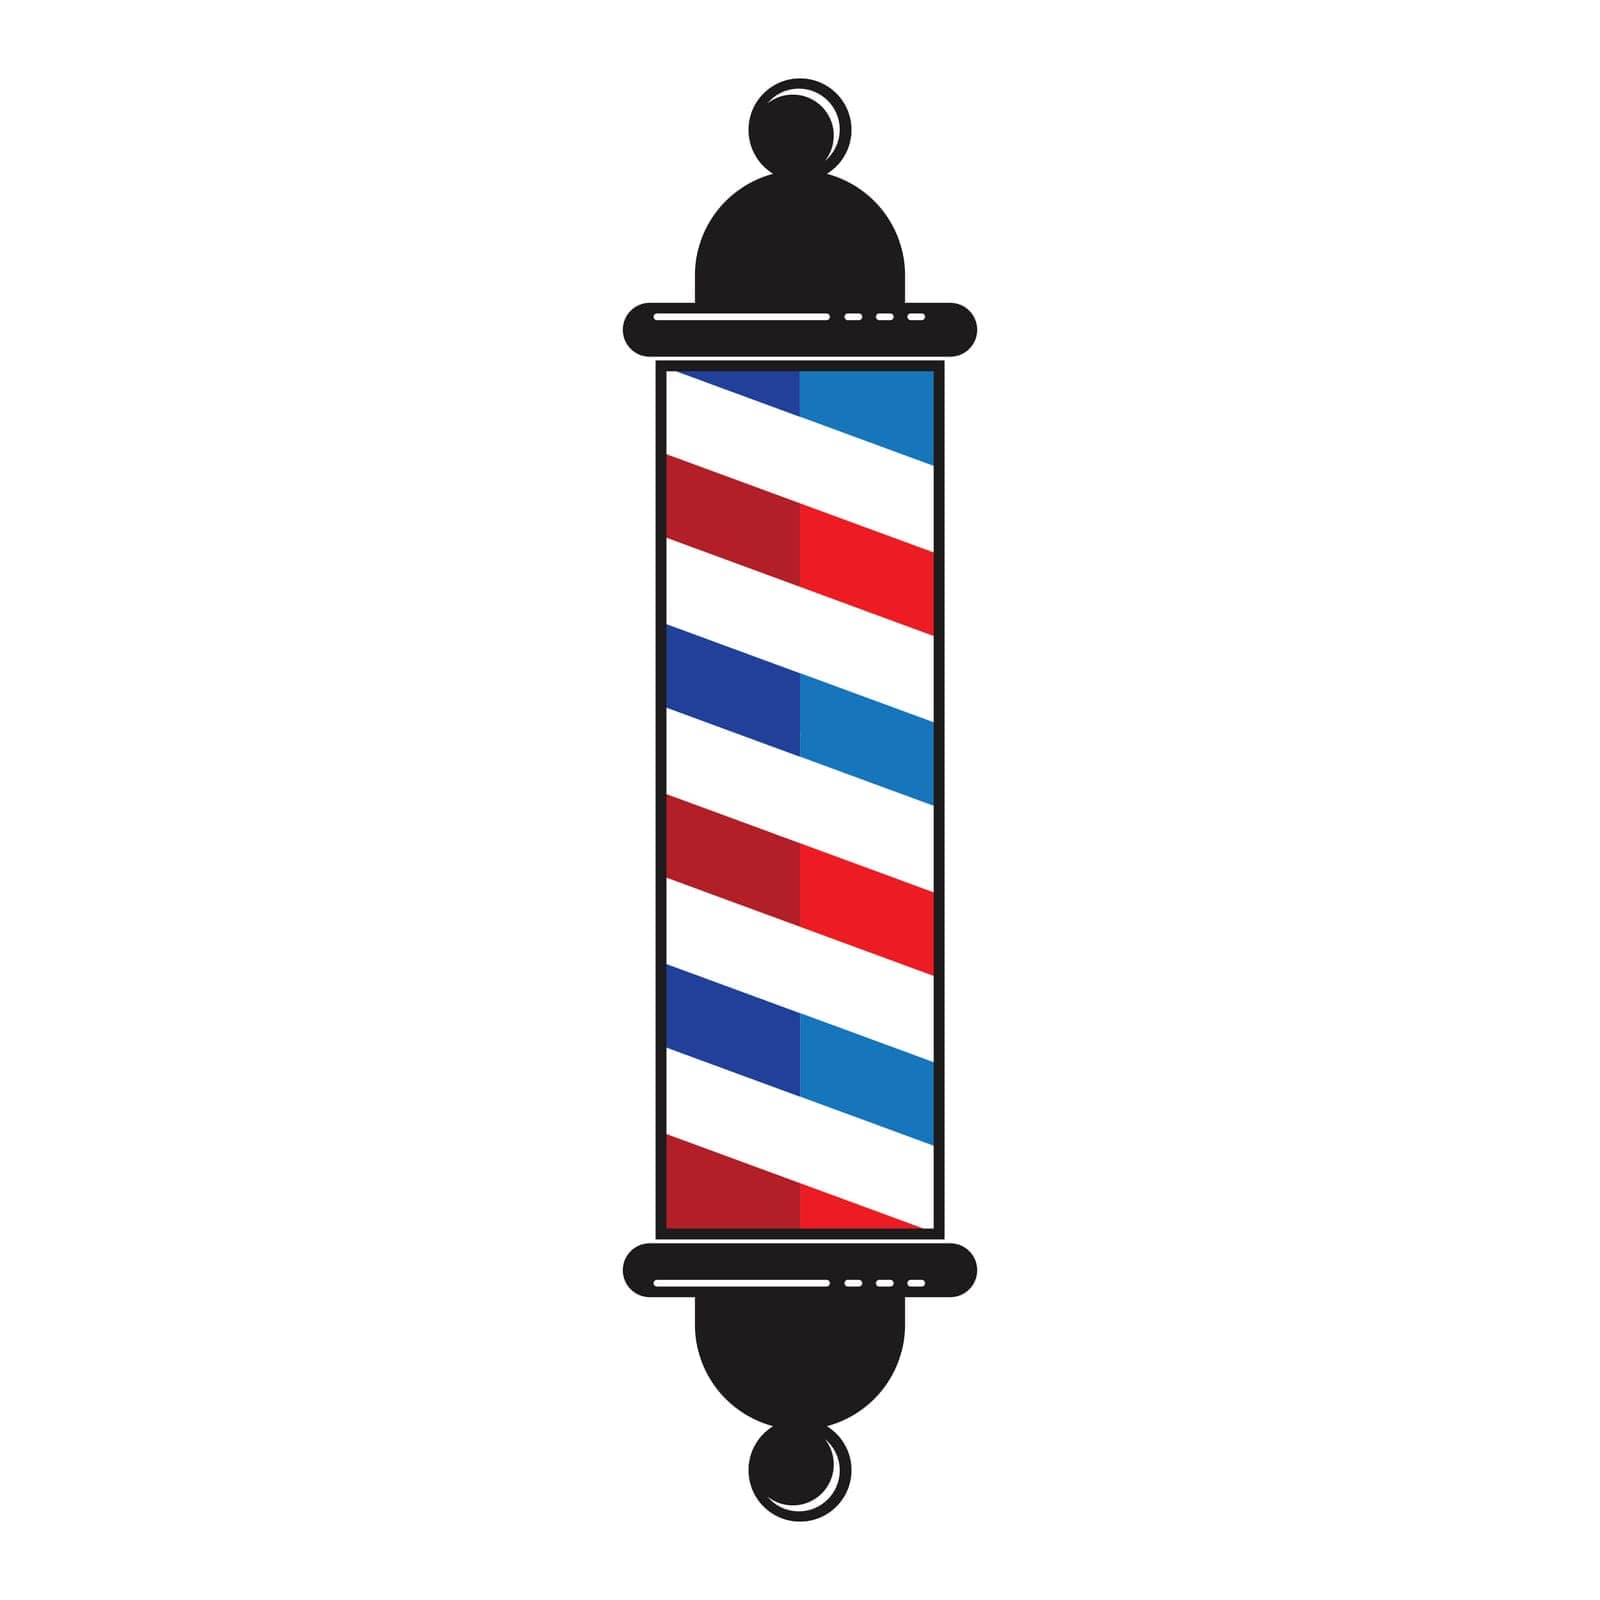 Barbershop logo,vector illustration symbol design